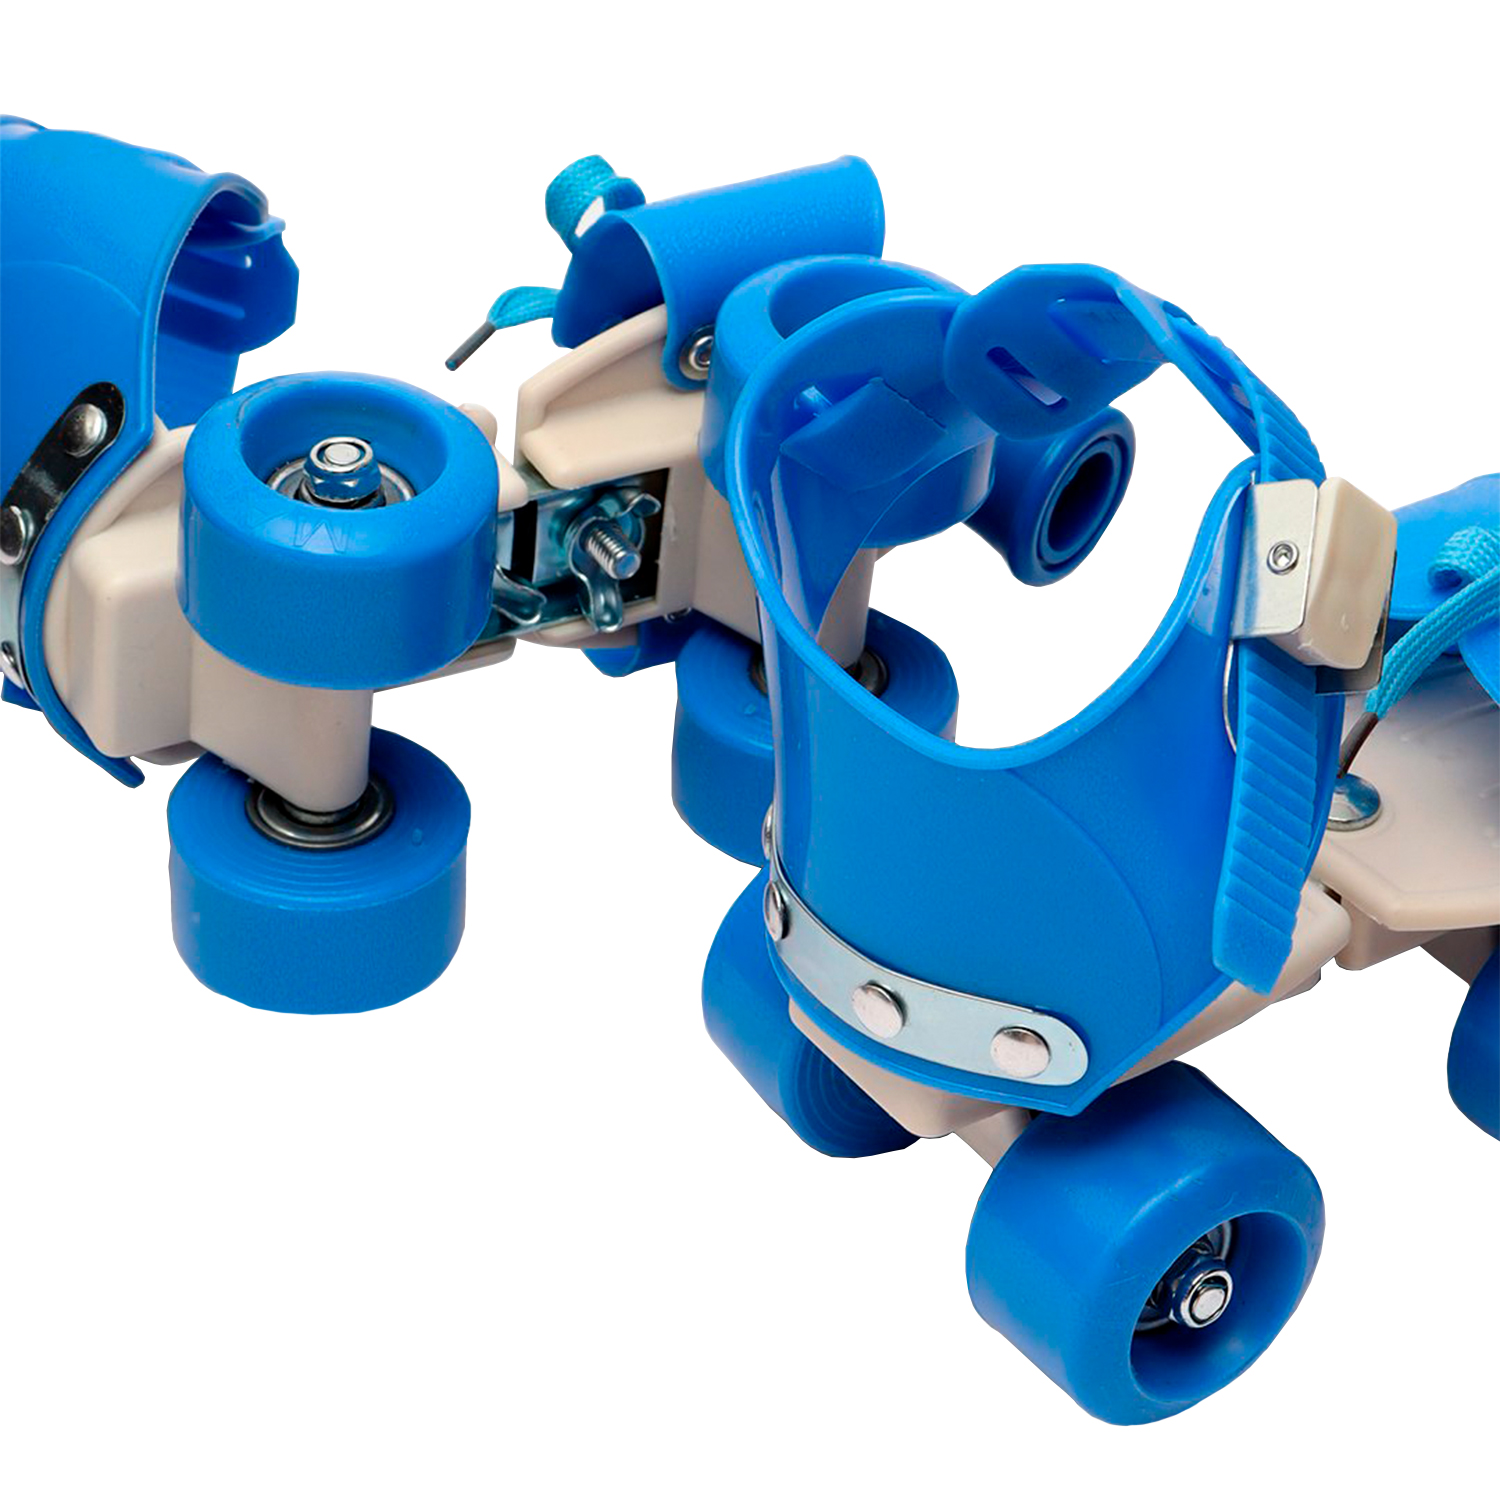 Двухрядные роликовые коньки для детей (синий)